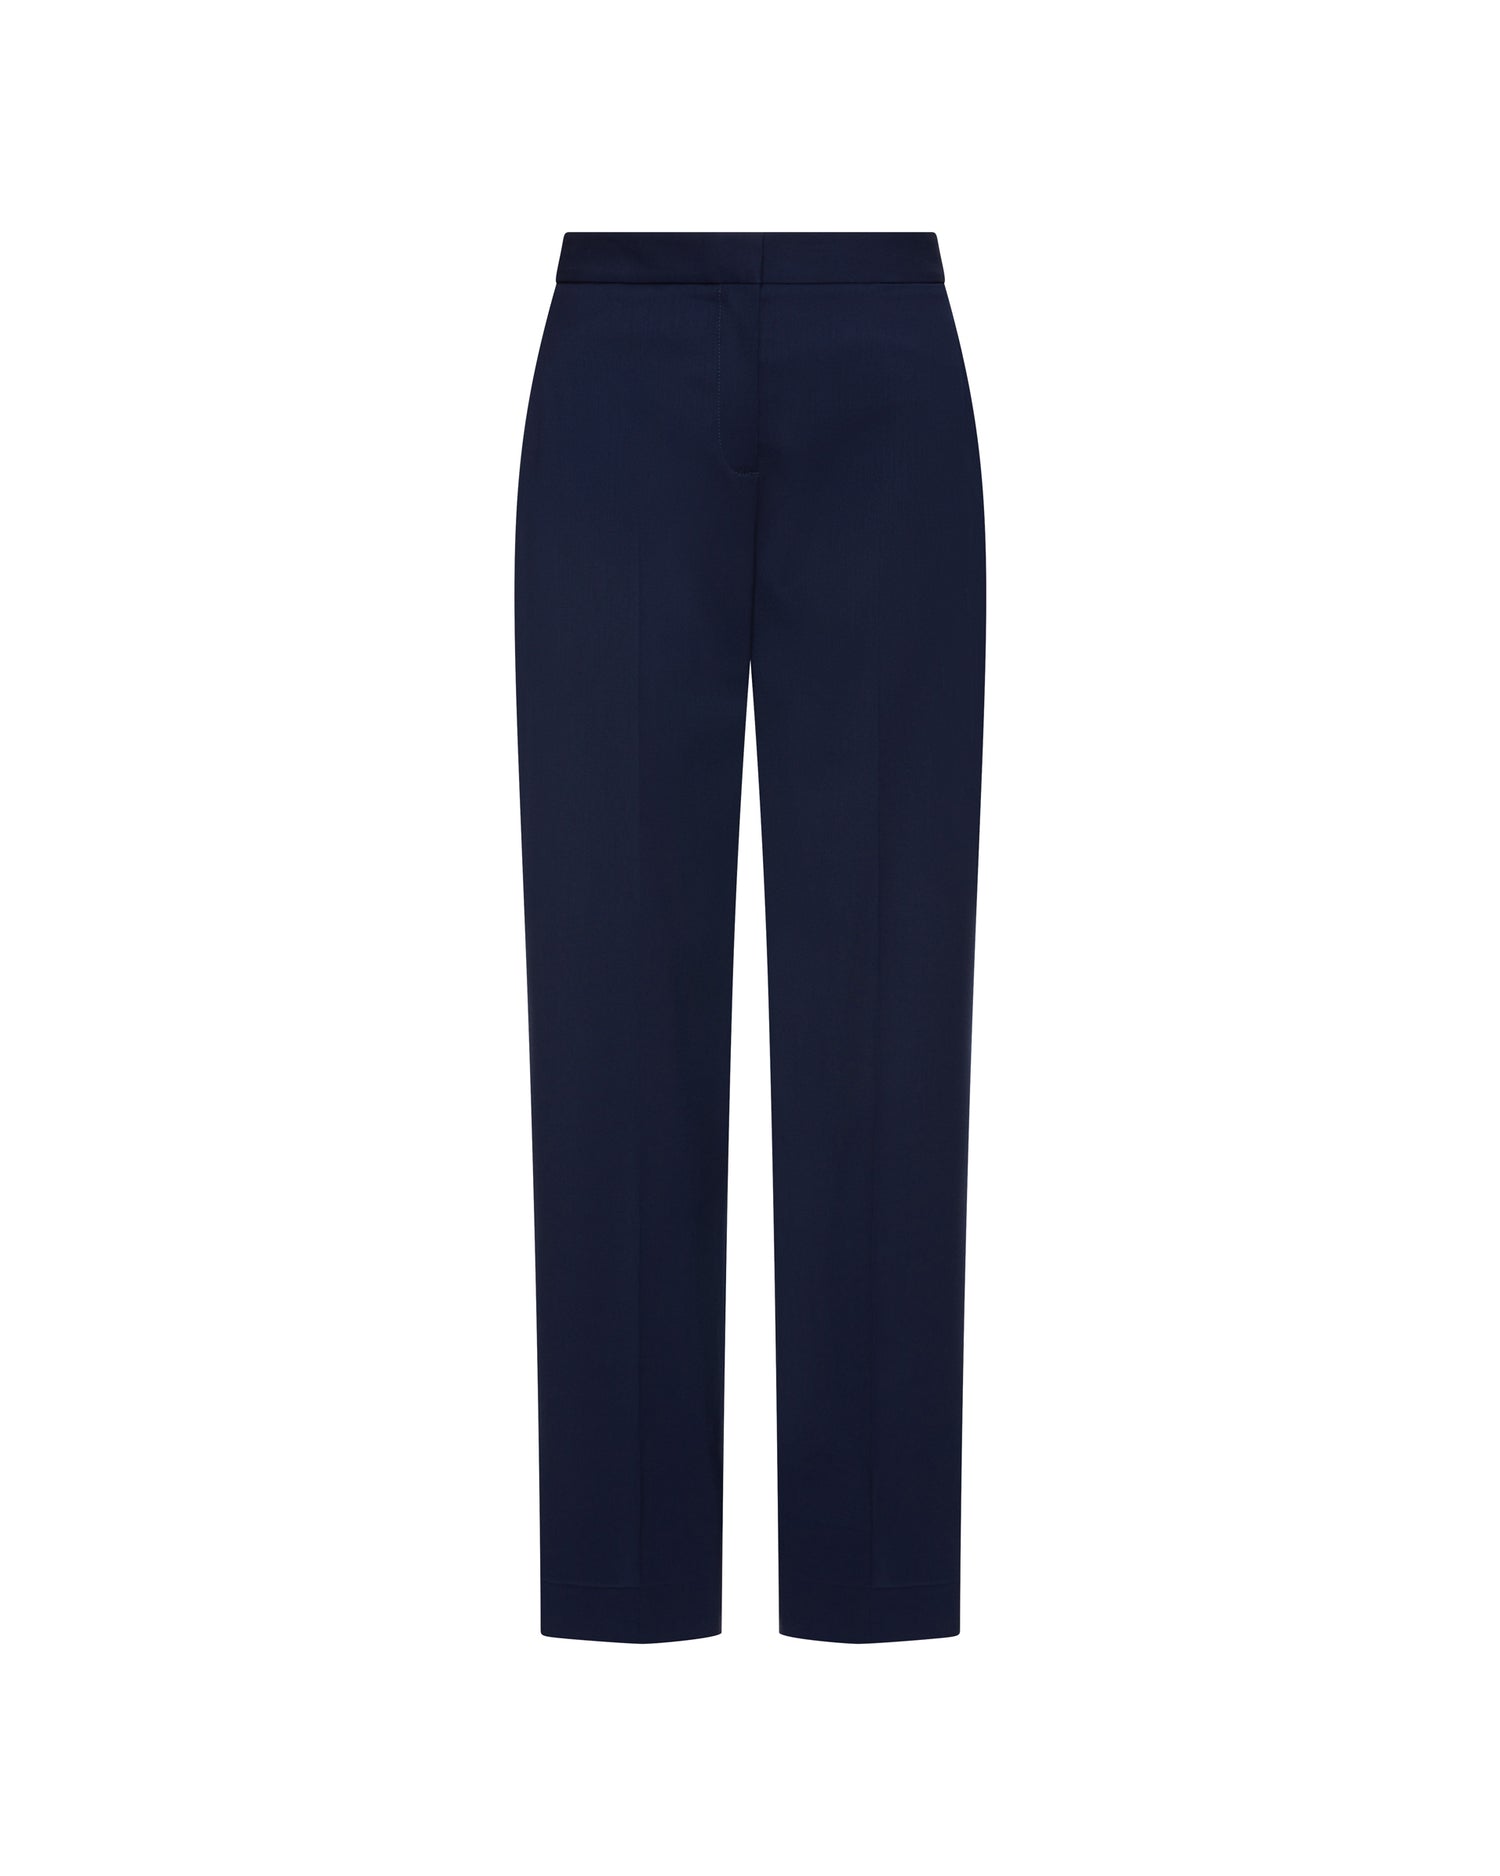 Buy Women Navy Solid Formal Regular Fit Trousers Online - 699637 | Van  Heusen